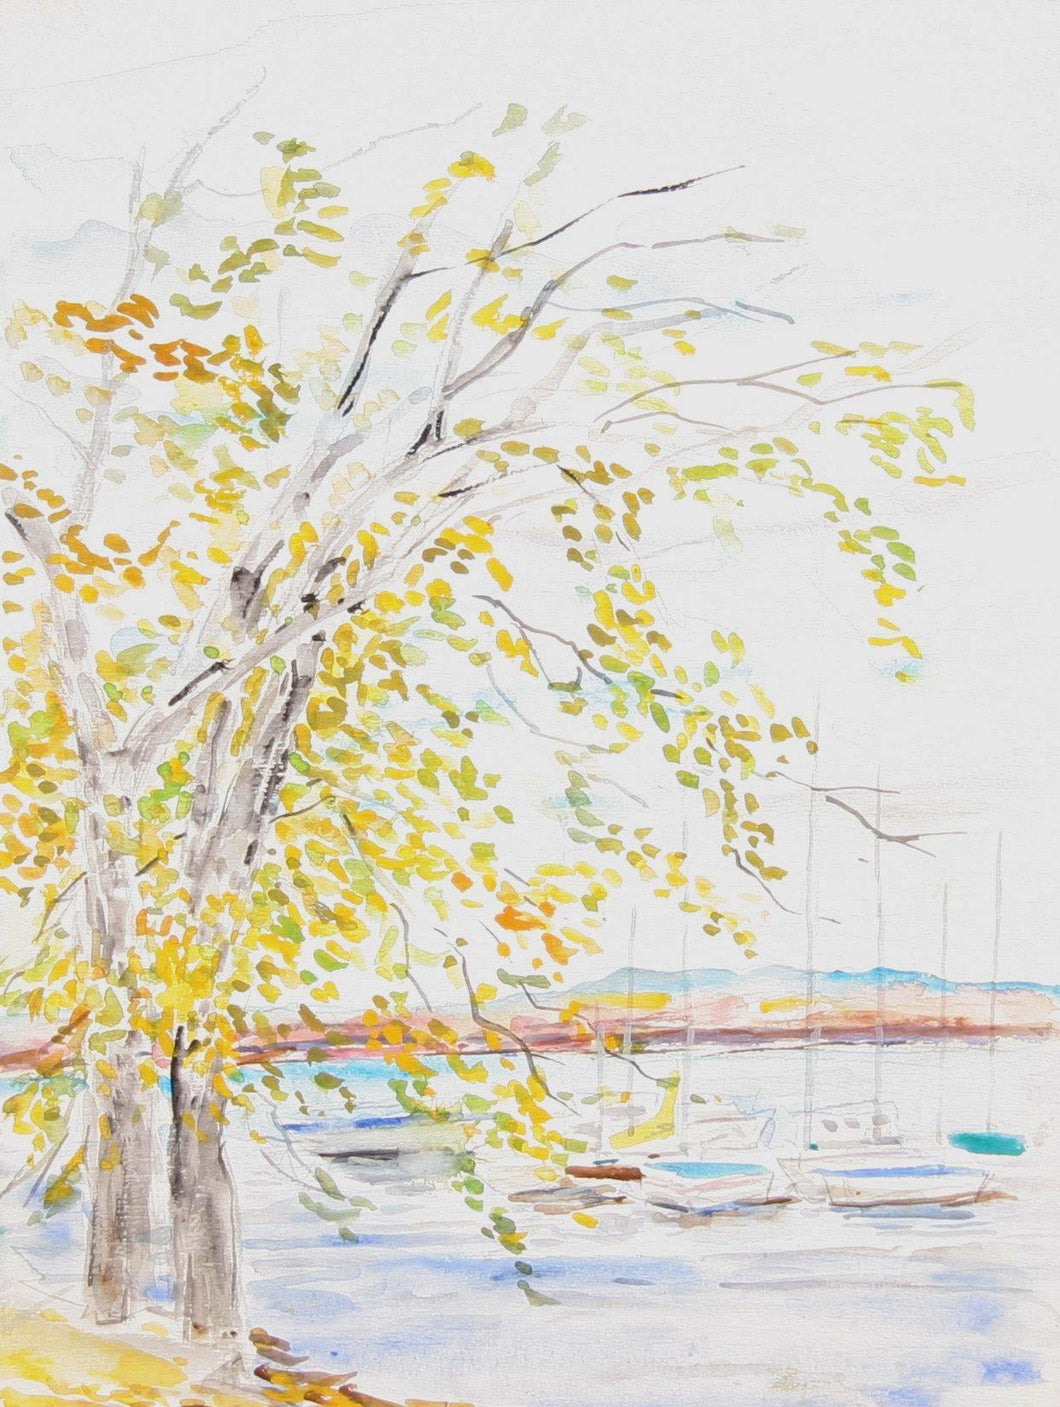 Autumn Marina Watercolor | Marshall Goodman,{{product.type}}